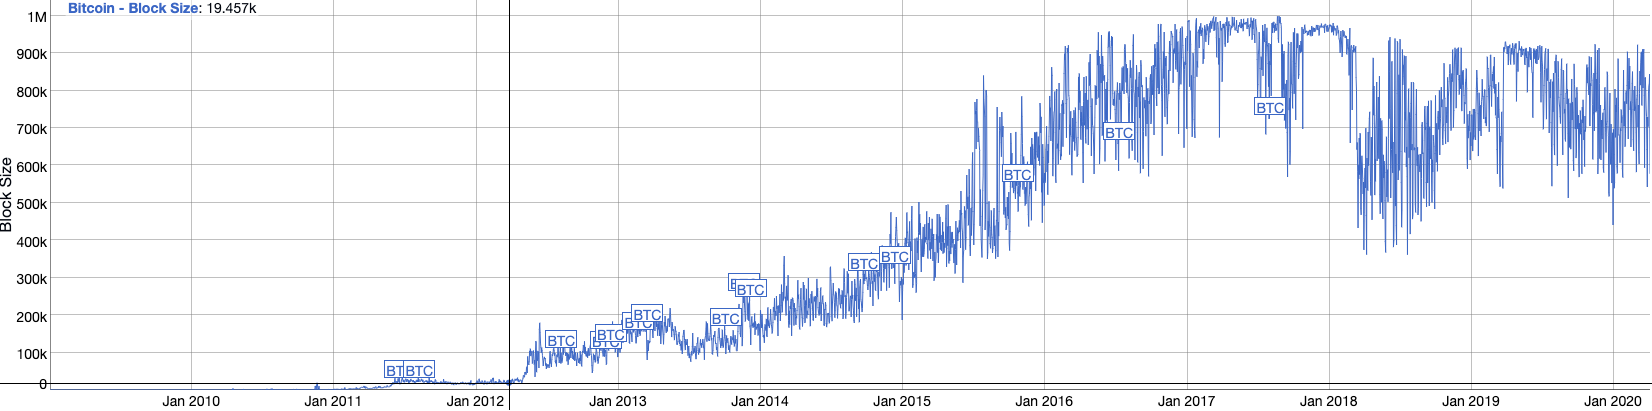 Bitcoin Block Size historical chart.